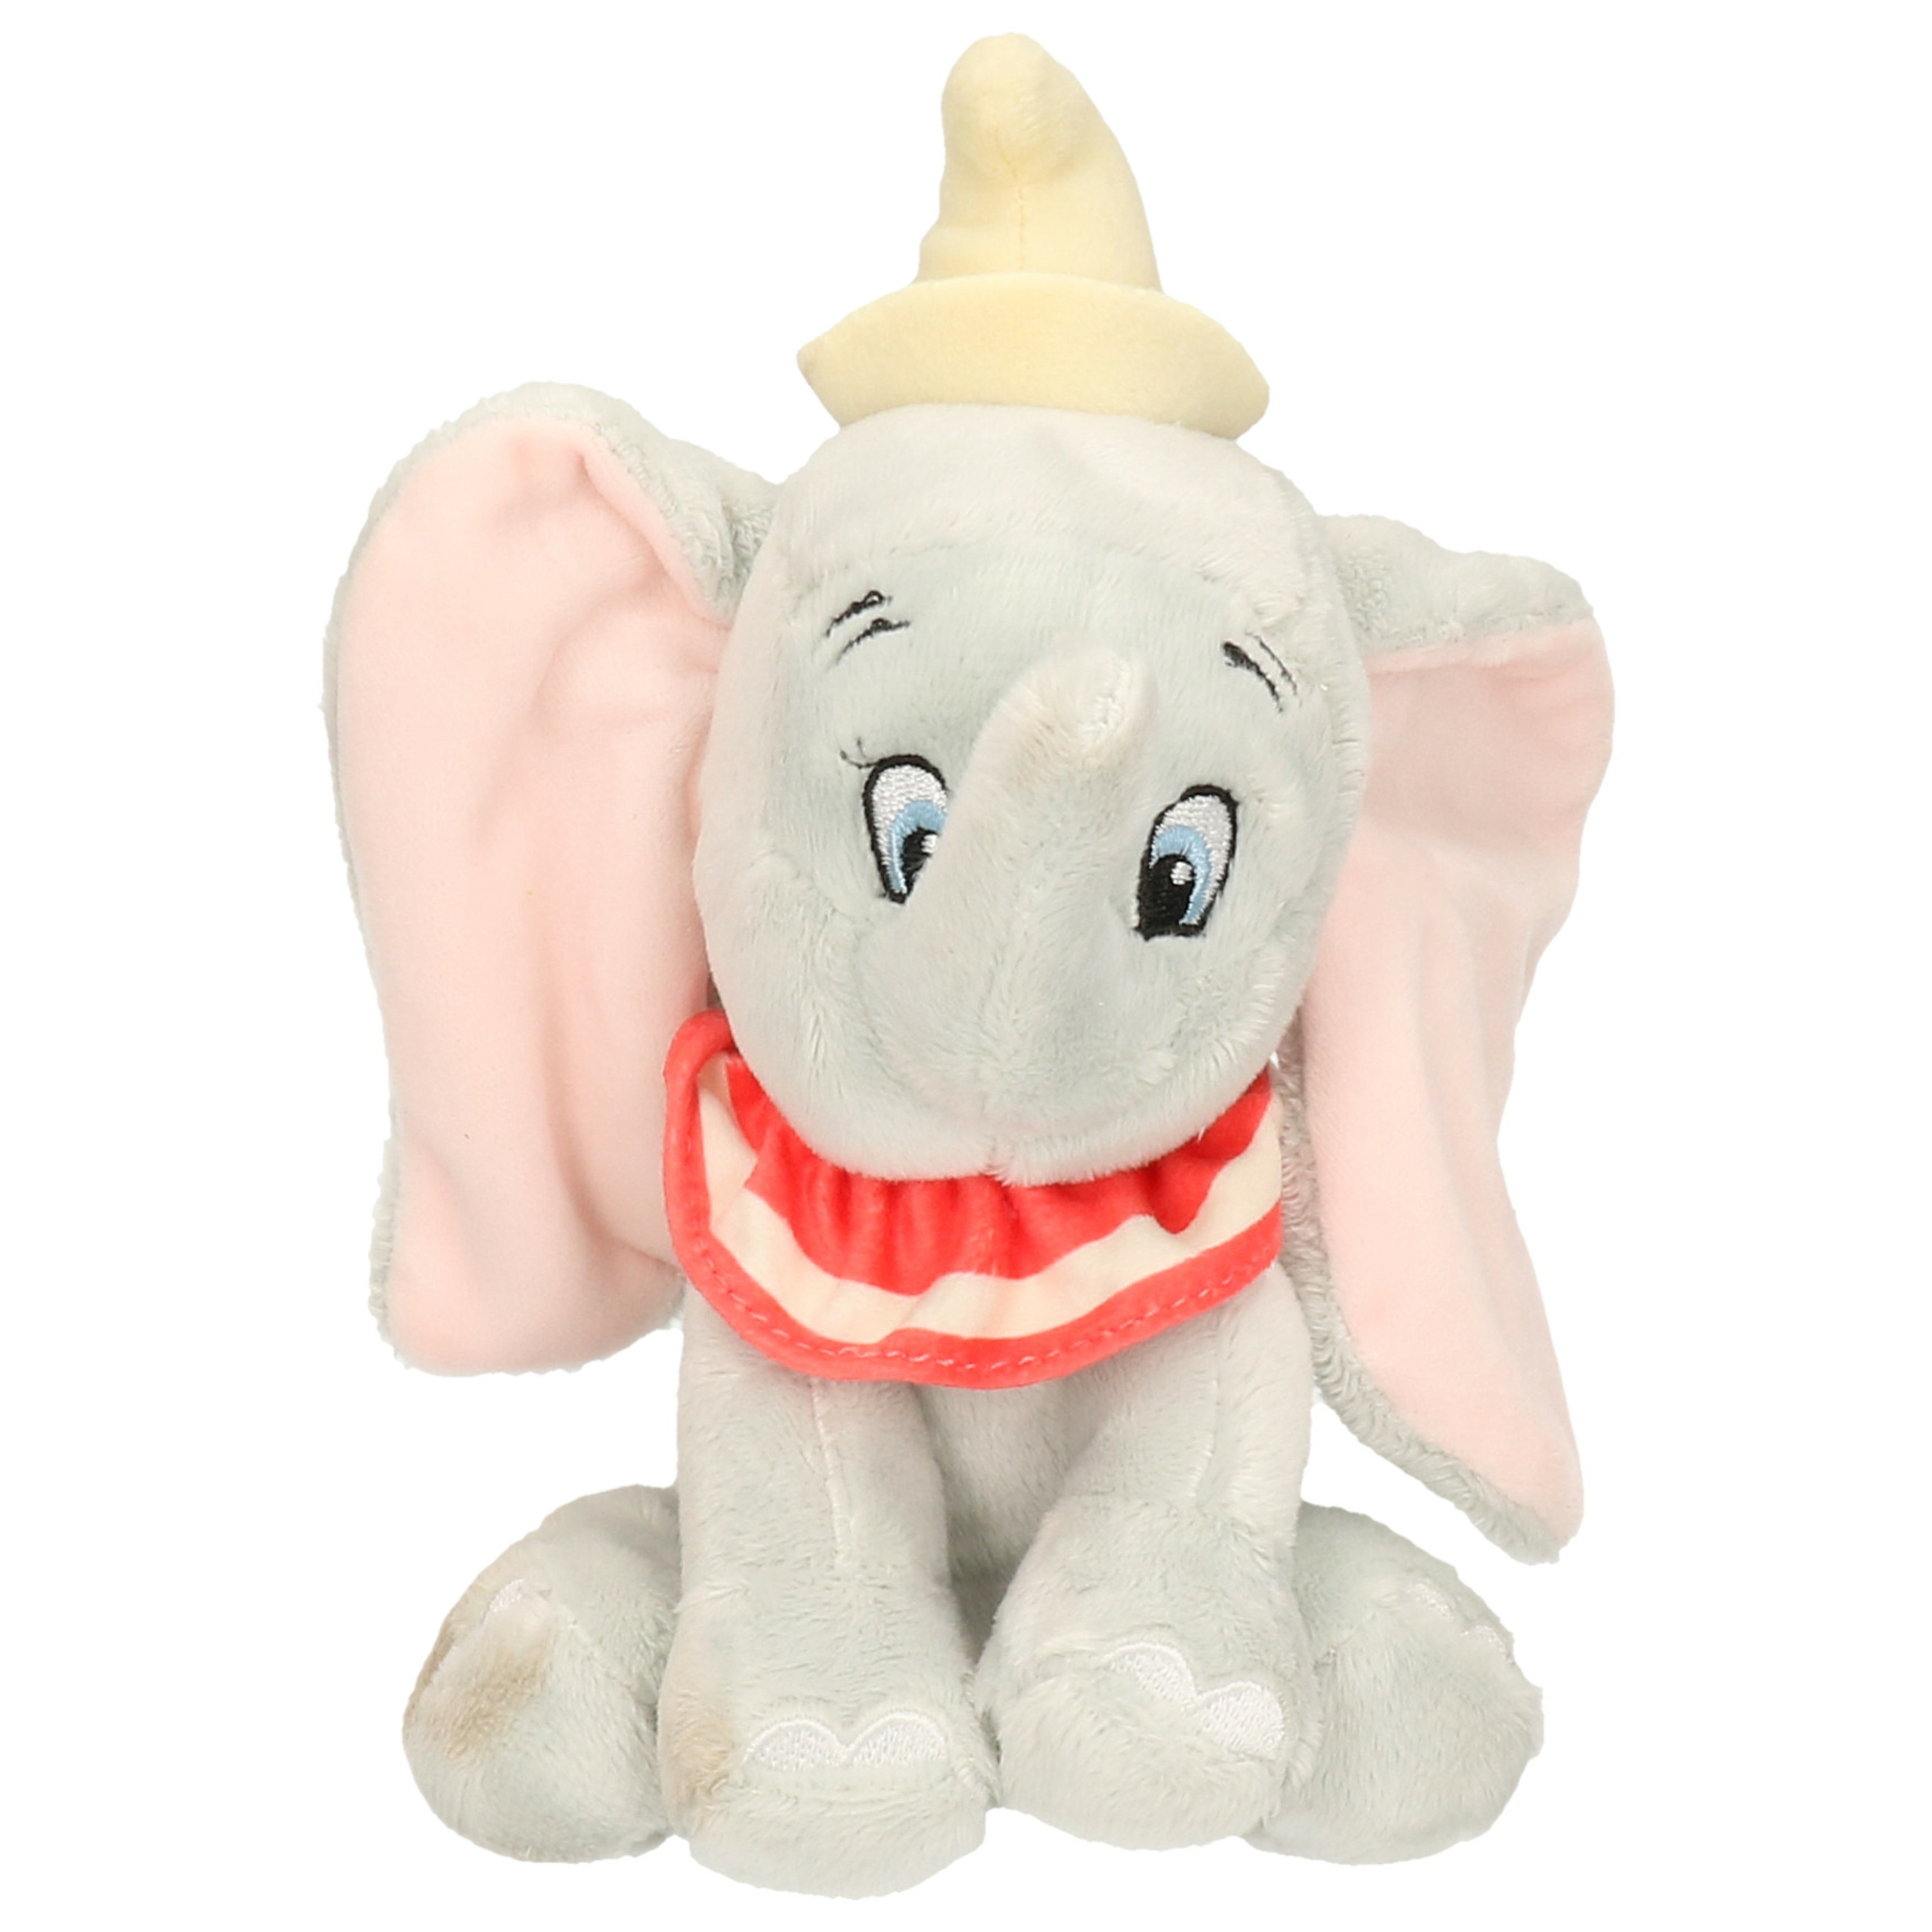 Knuffel Disney Dumbo-Dombo olifantje grijs 20 cm knuffels kopen